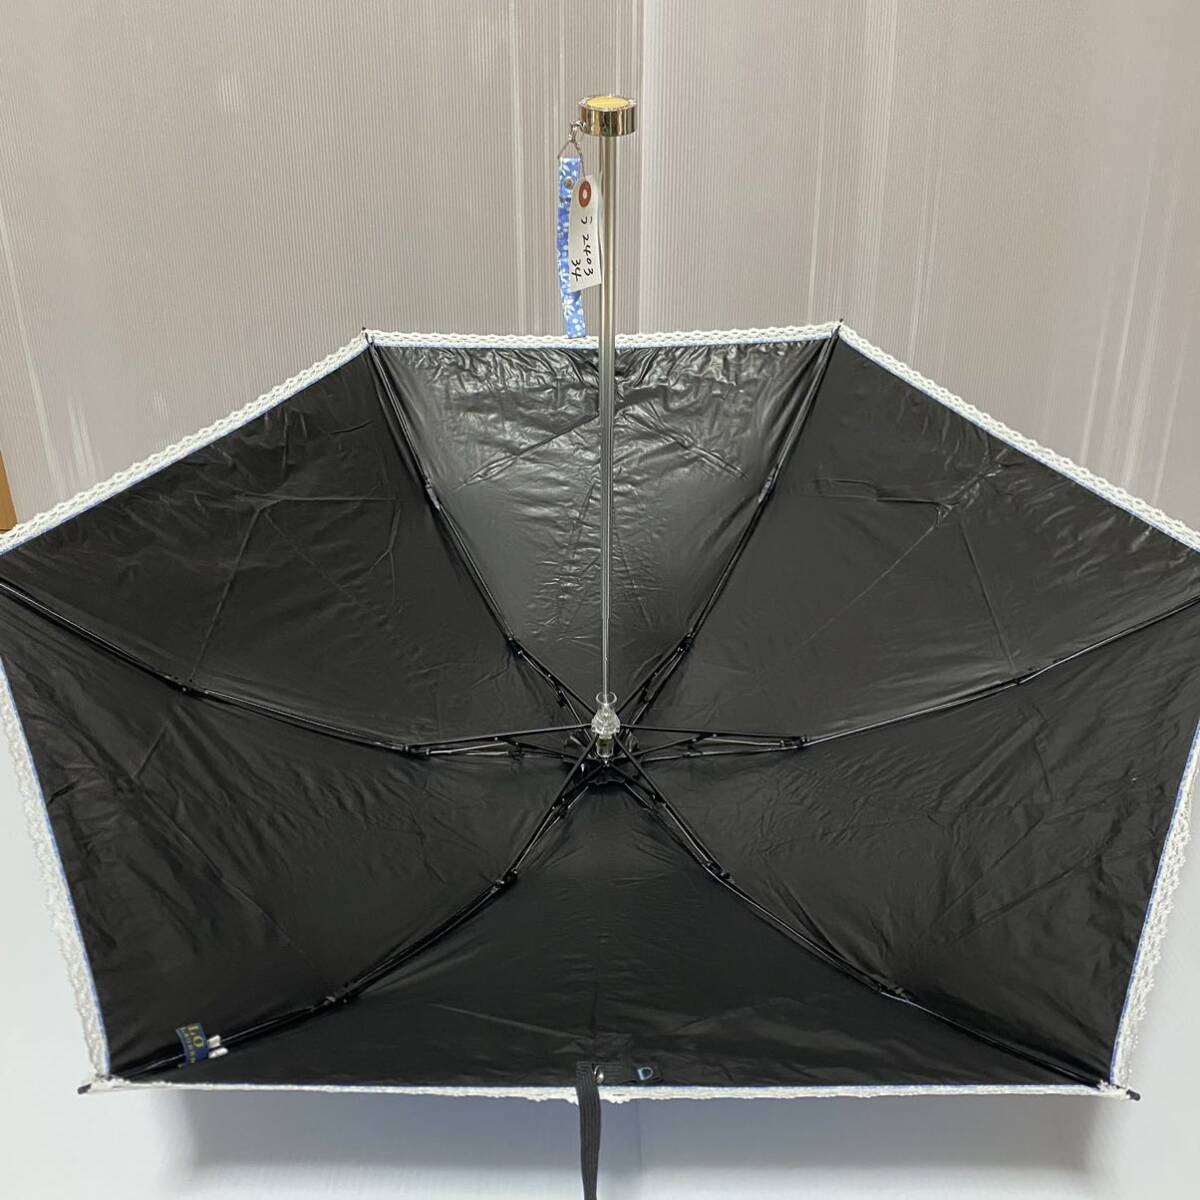 う240334 POLO RALPH LAUREN ポロ ラルフローレン 折りたたみ傘 晴雨兼用 雨傘 日傘の画像2